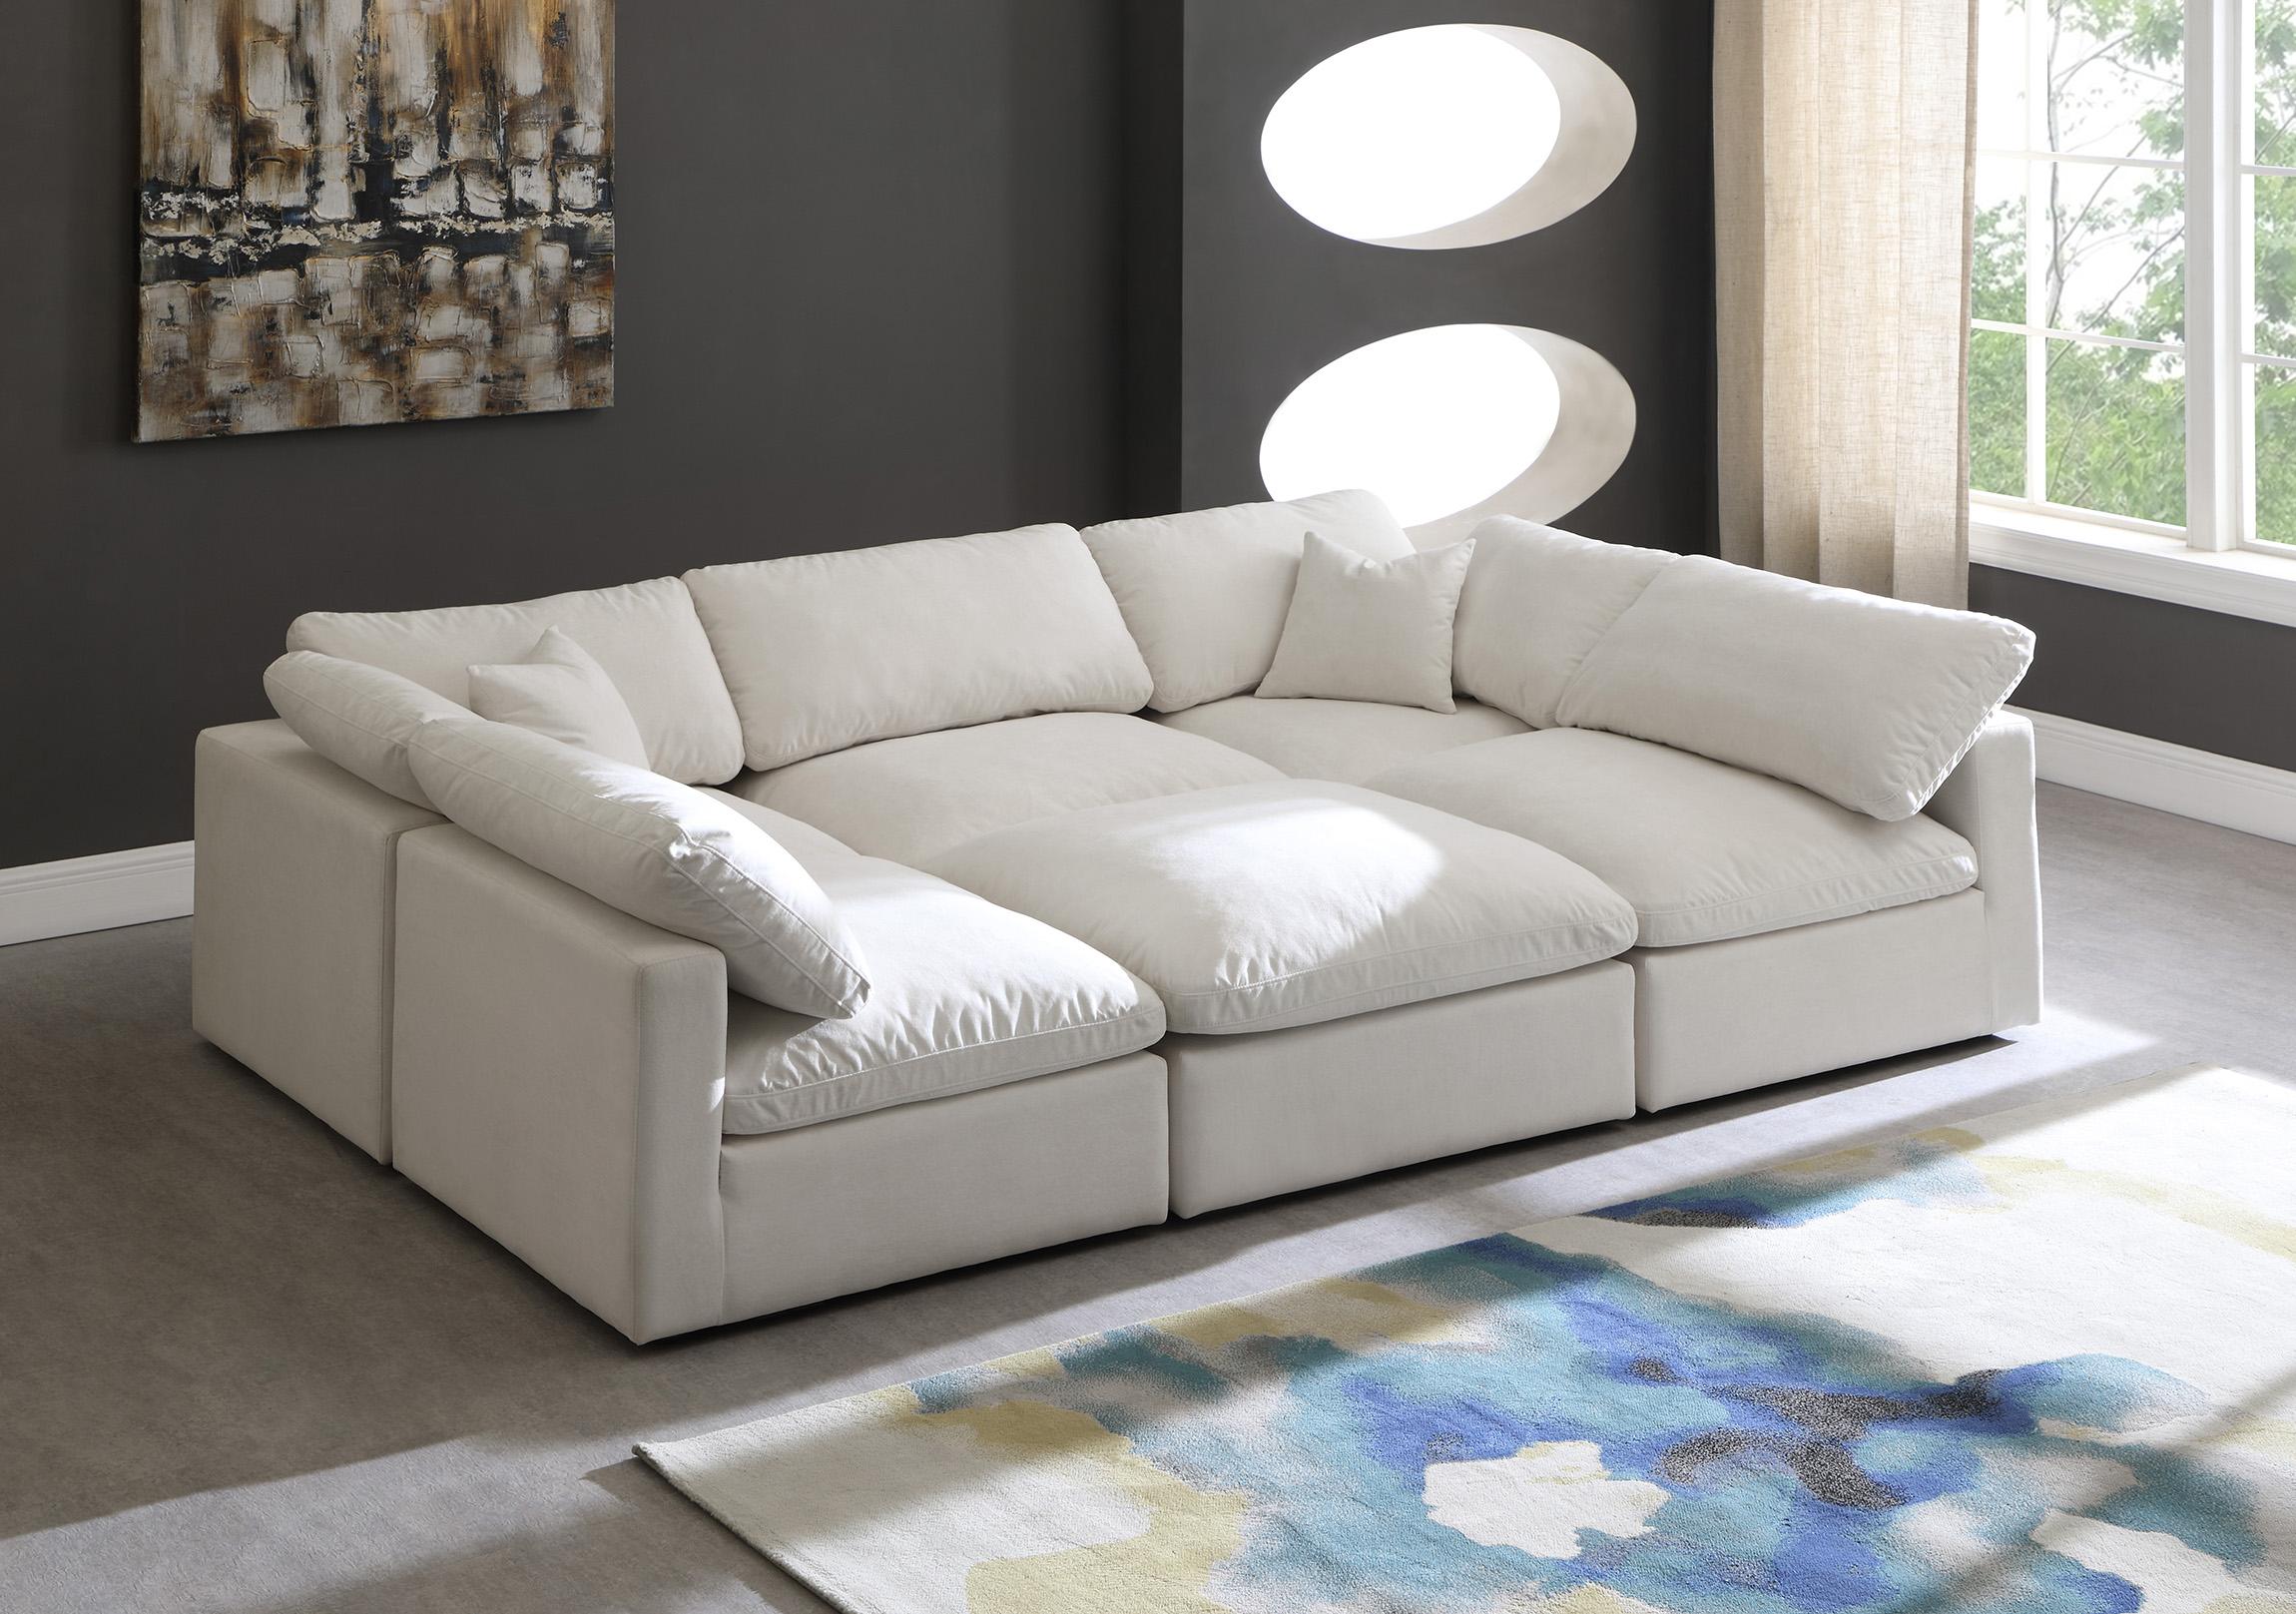 

    
Meridian Furniture 602Cream-Sec6C Modular Sectional Sofa Cream 602Cream-Sec6C
